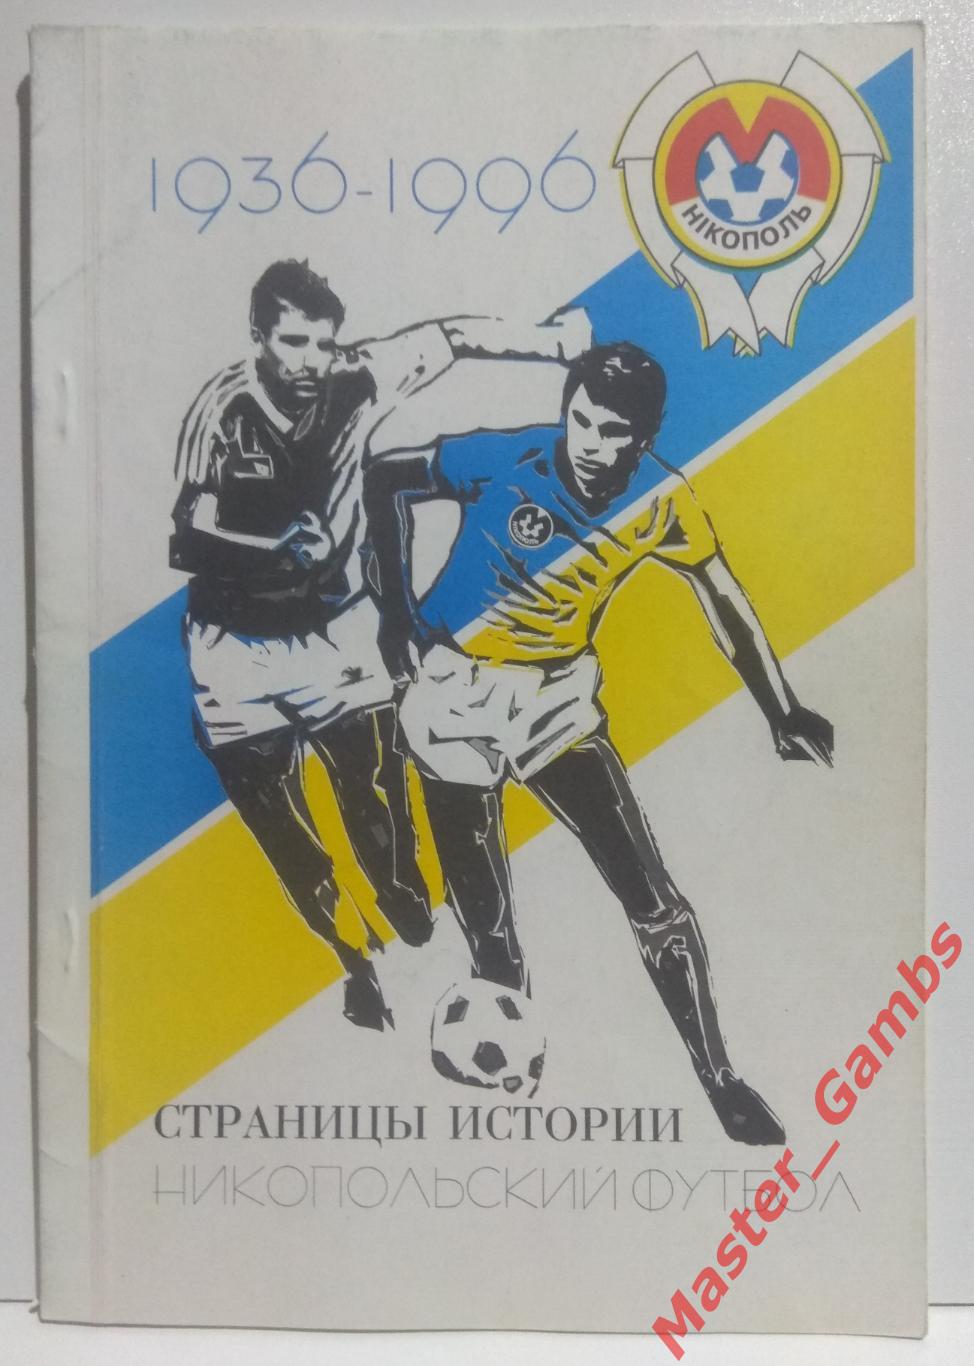 Киселев, Кокырло - Никопольский футбол. Страницы истории 1936 - 1996 г.г./ 1996*